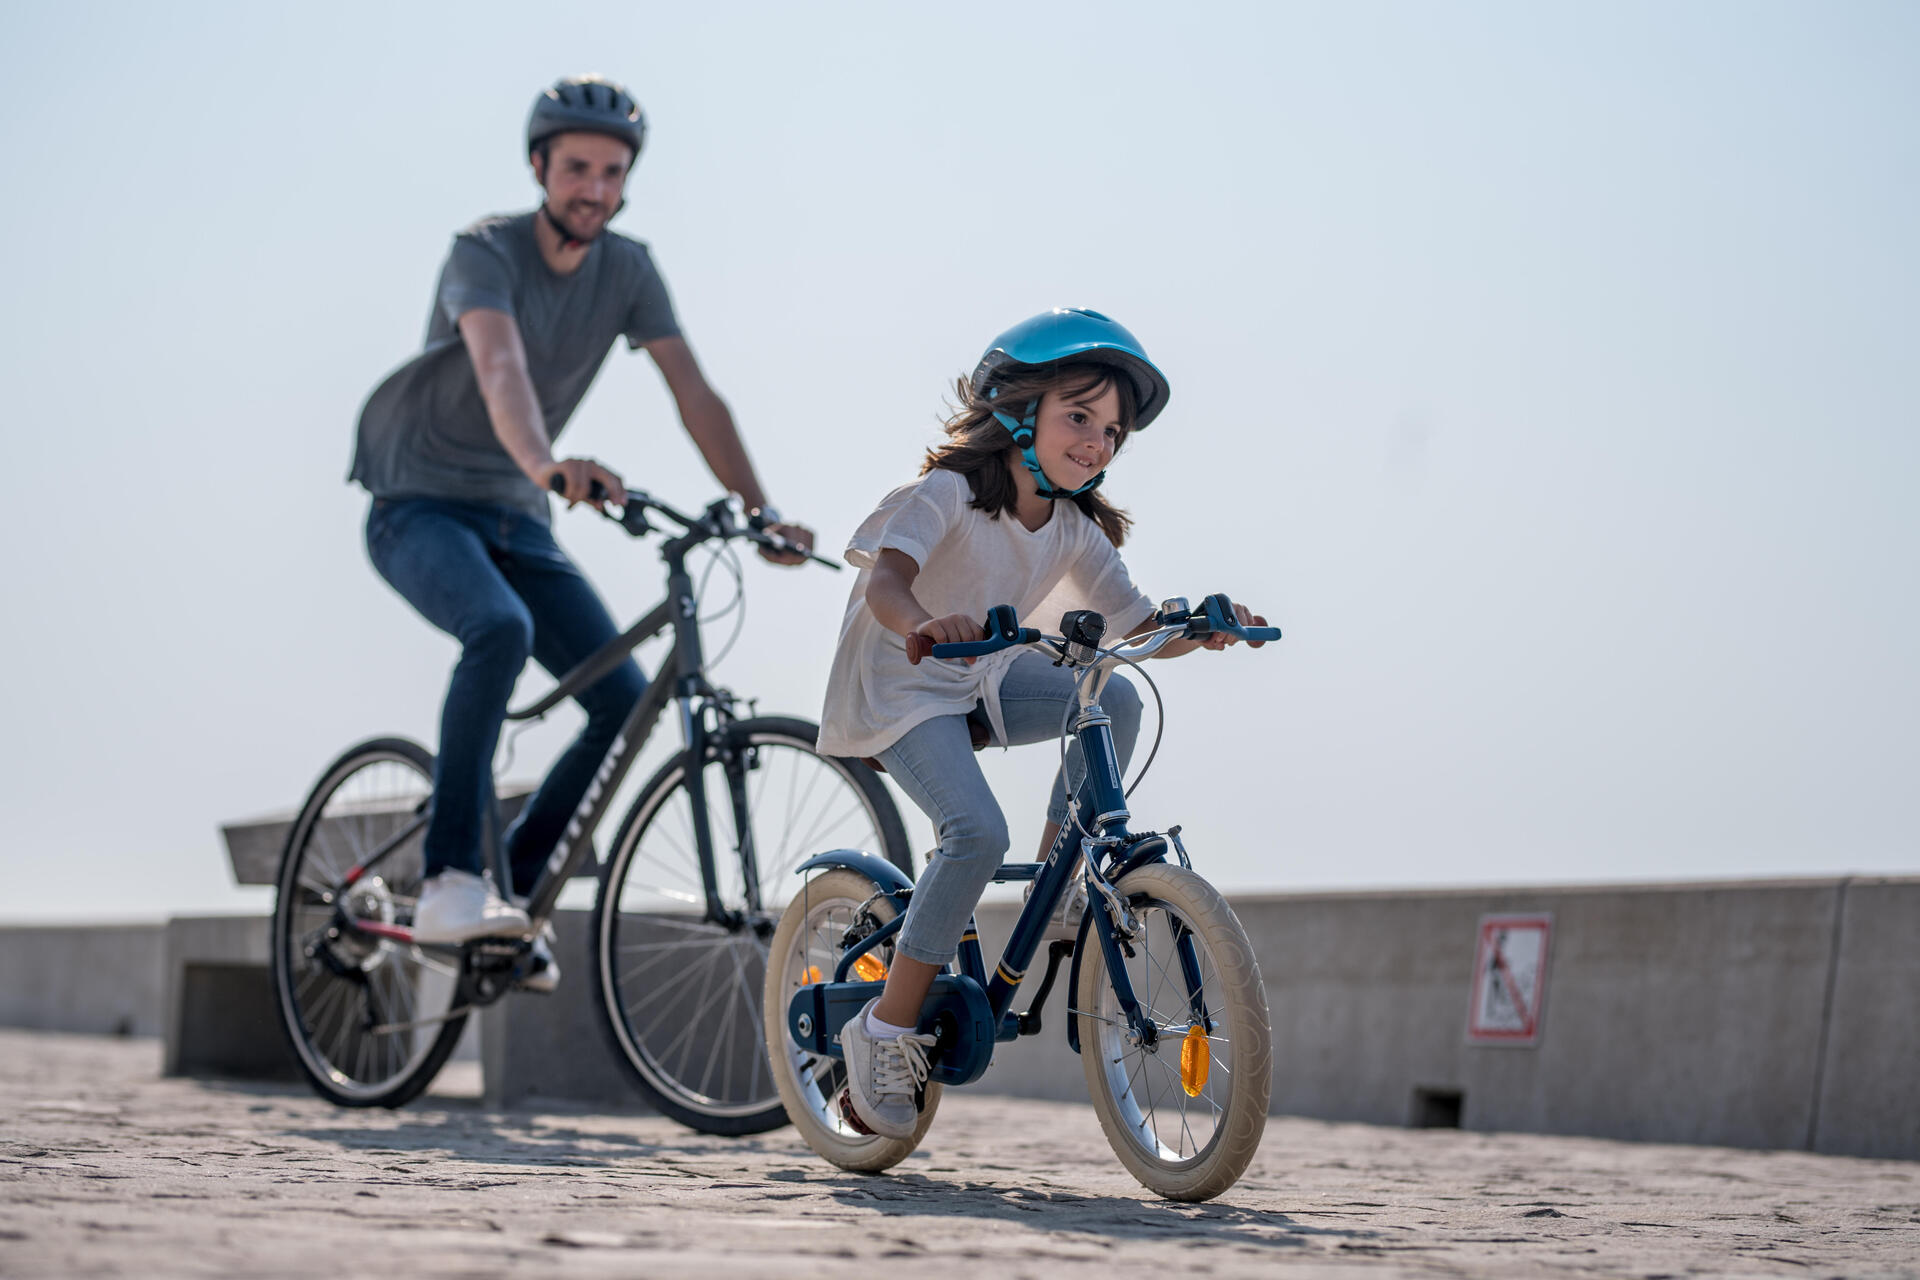 mężczyzna z dziewczynką jadą na rowerach w kaskach